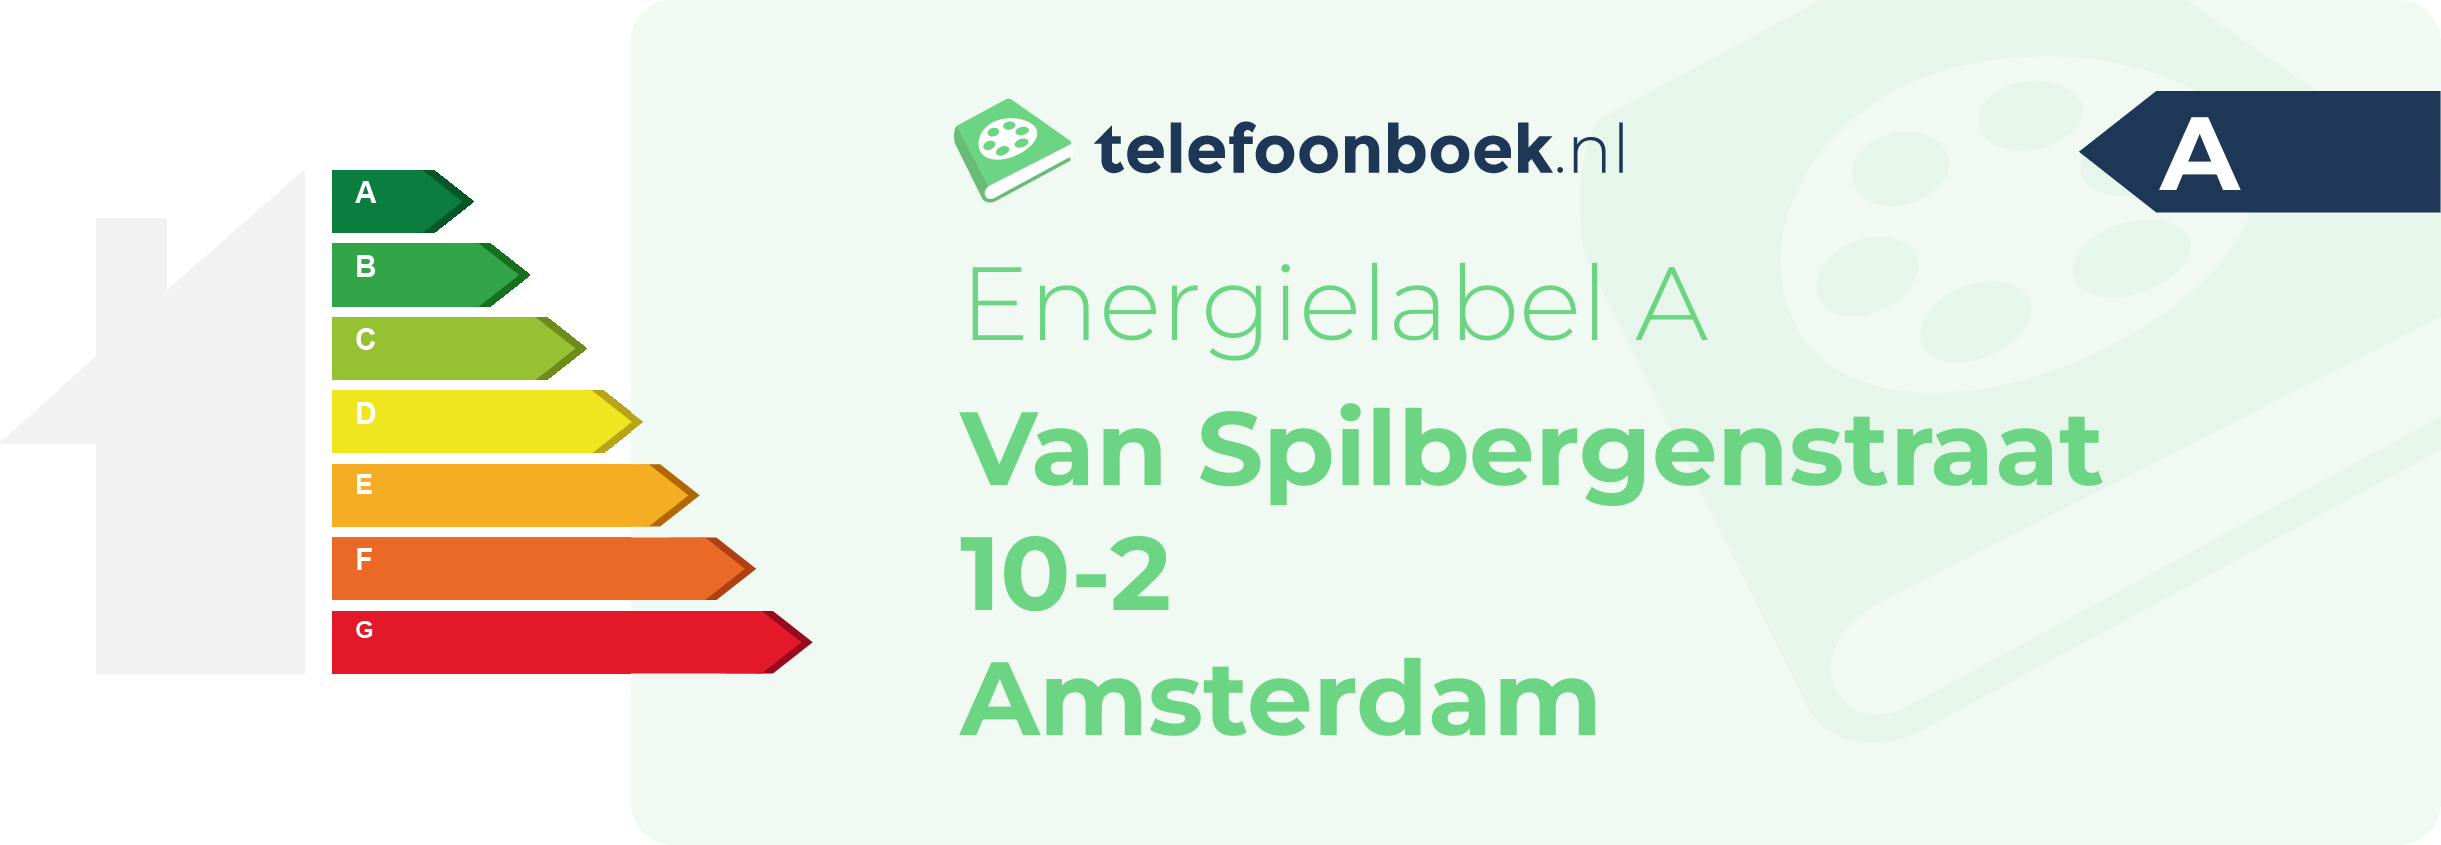 Energielabel Van Spilbergenstraat 10-2 Amsterdam